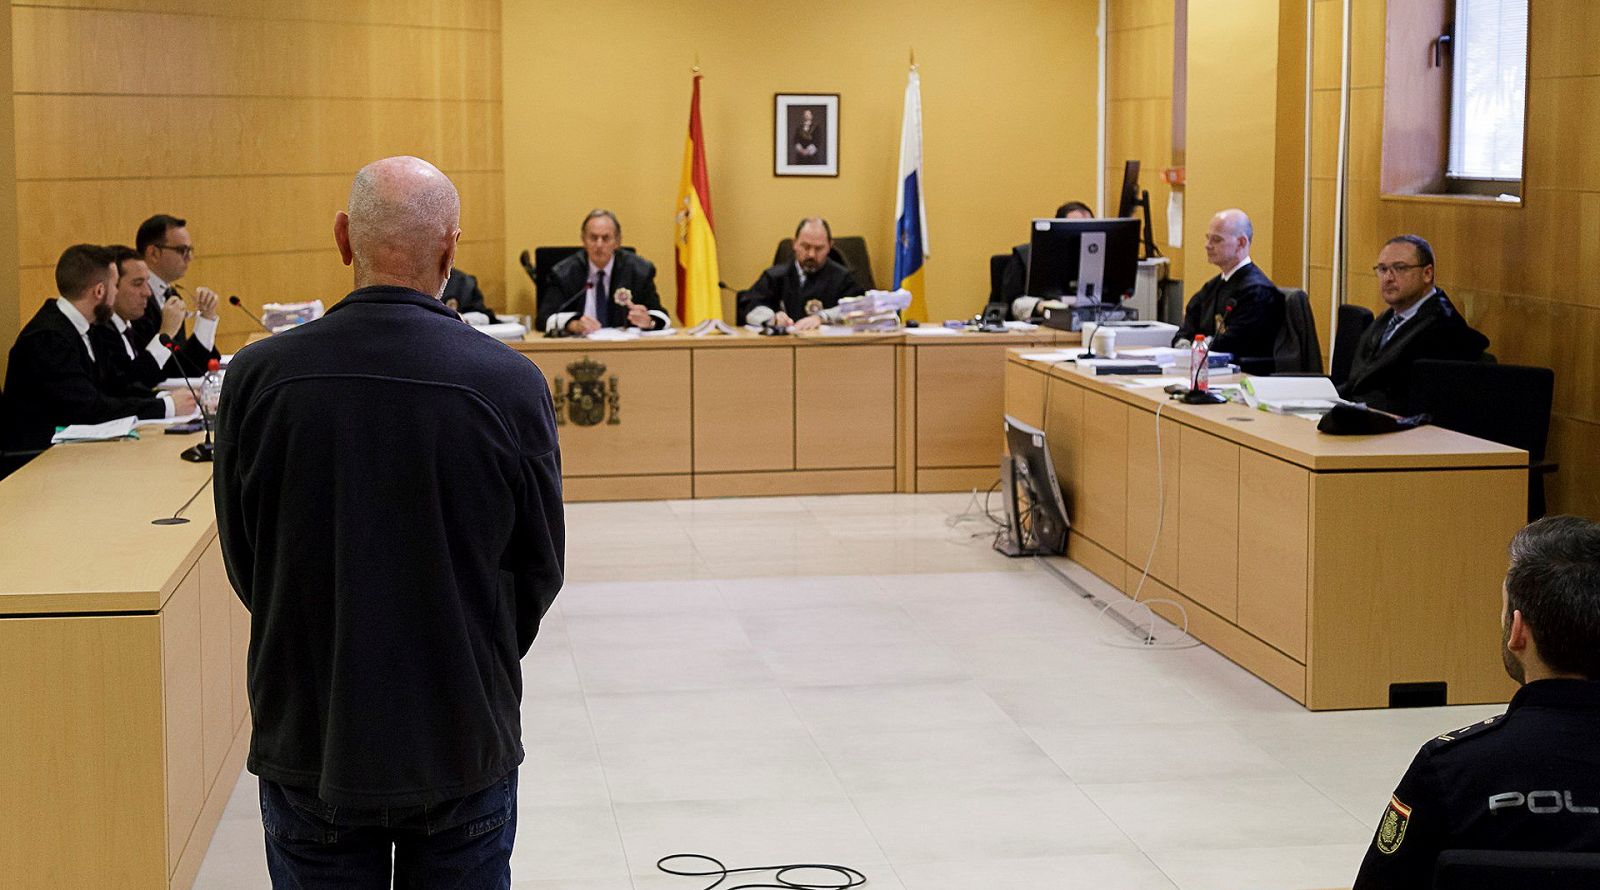 La Audiencia de Santa Cruz de Tenerife comenza el juicio contra el exseleccionador nacional de pruebas combinadas de atletismo, Miguel Ángel Millán.